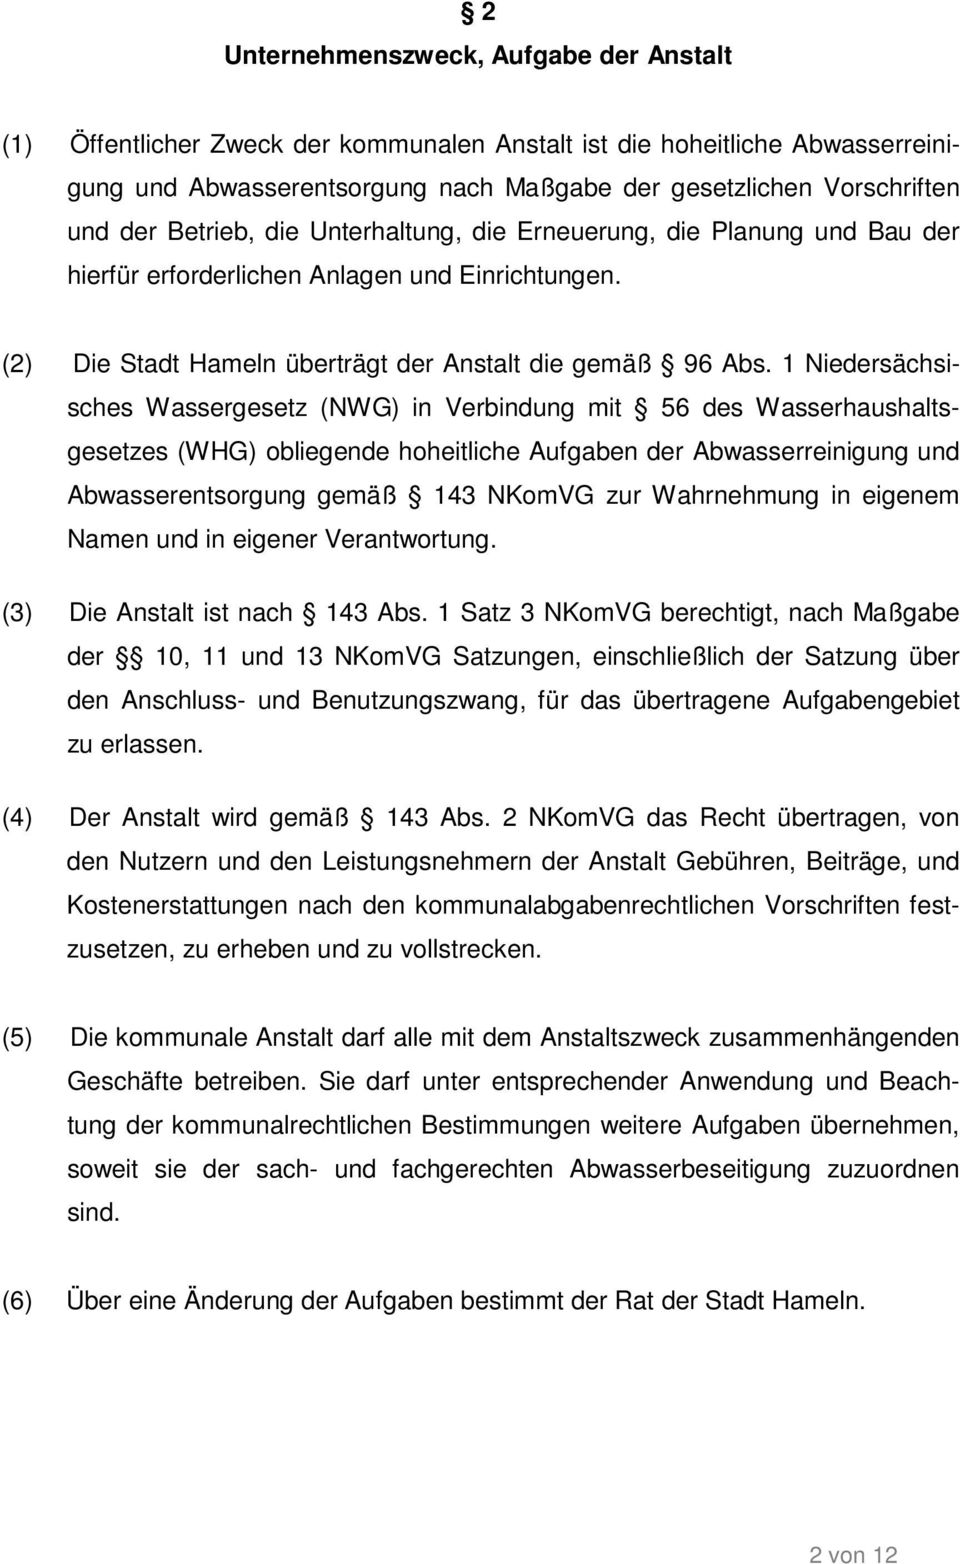 1 Niedersächsisches Wassergesetz (NWG) in Verbindung mit 56 des Wasserhaushaltsgesetzes (WHG) obliegende hoheitliche Aufgaben der Abwasserreinigung und Abwasserentsorgung gemäß 143 NKomVG zur